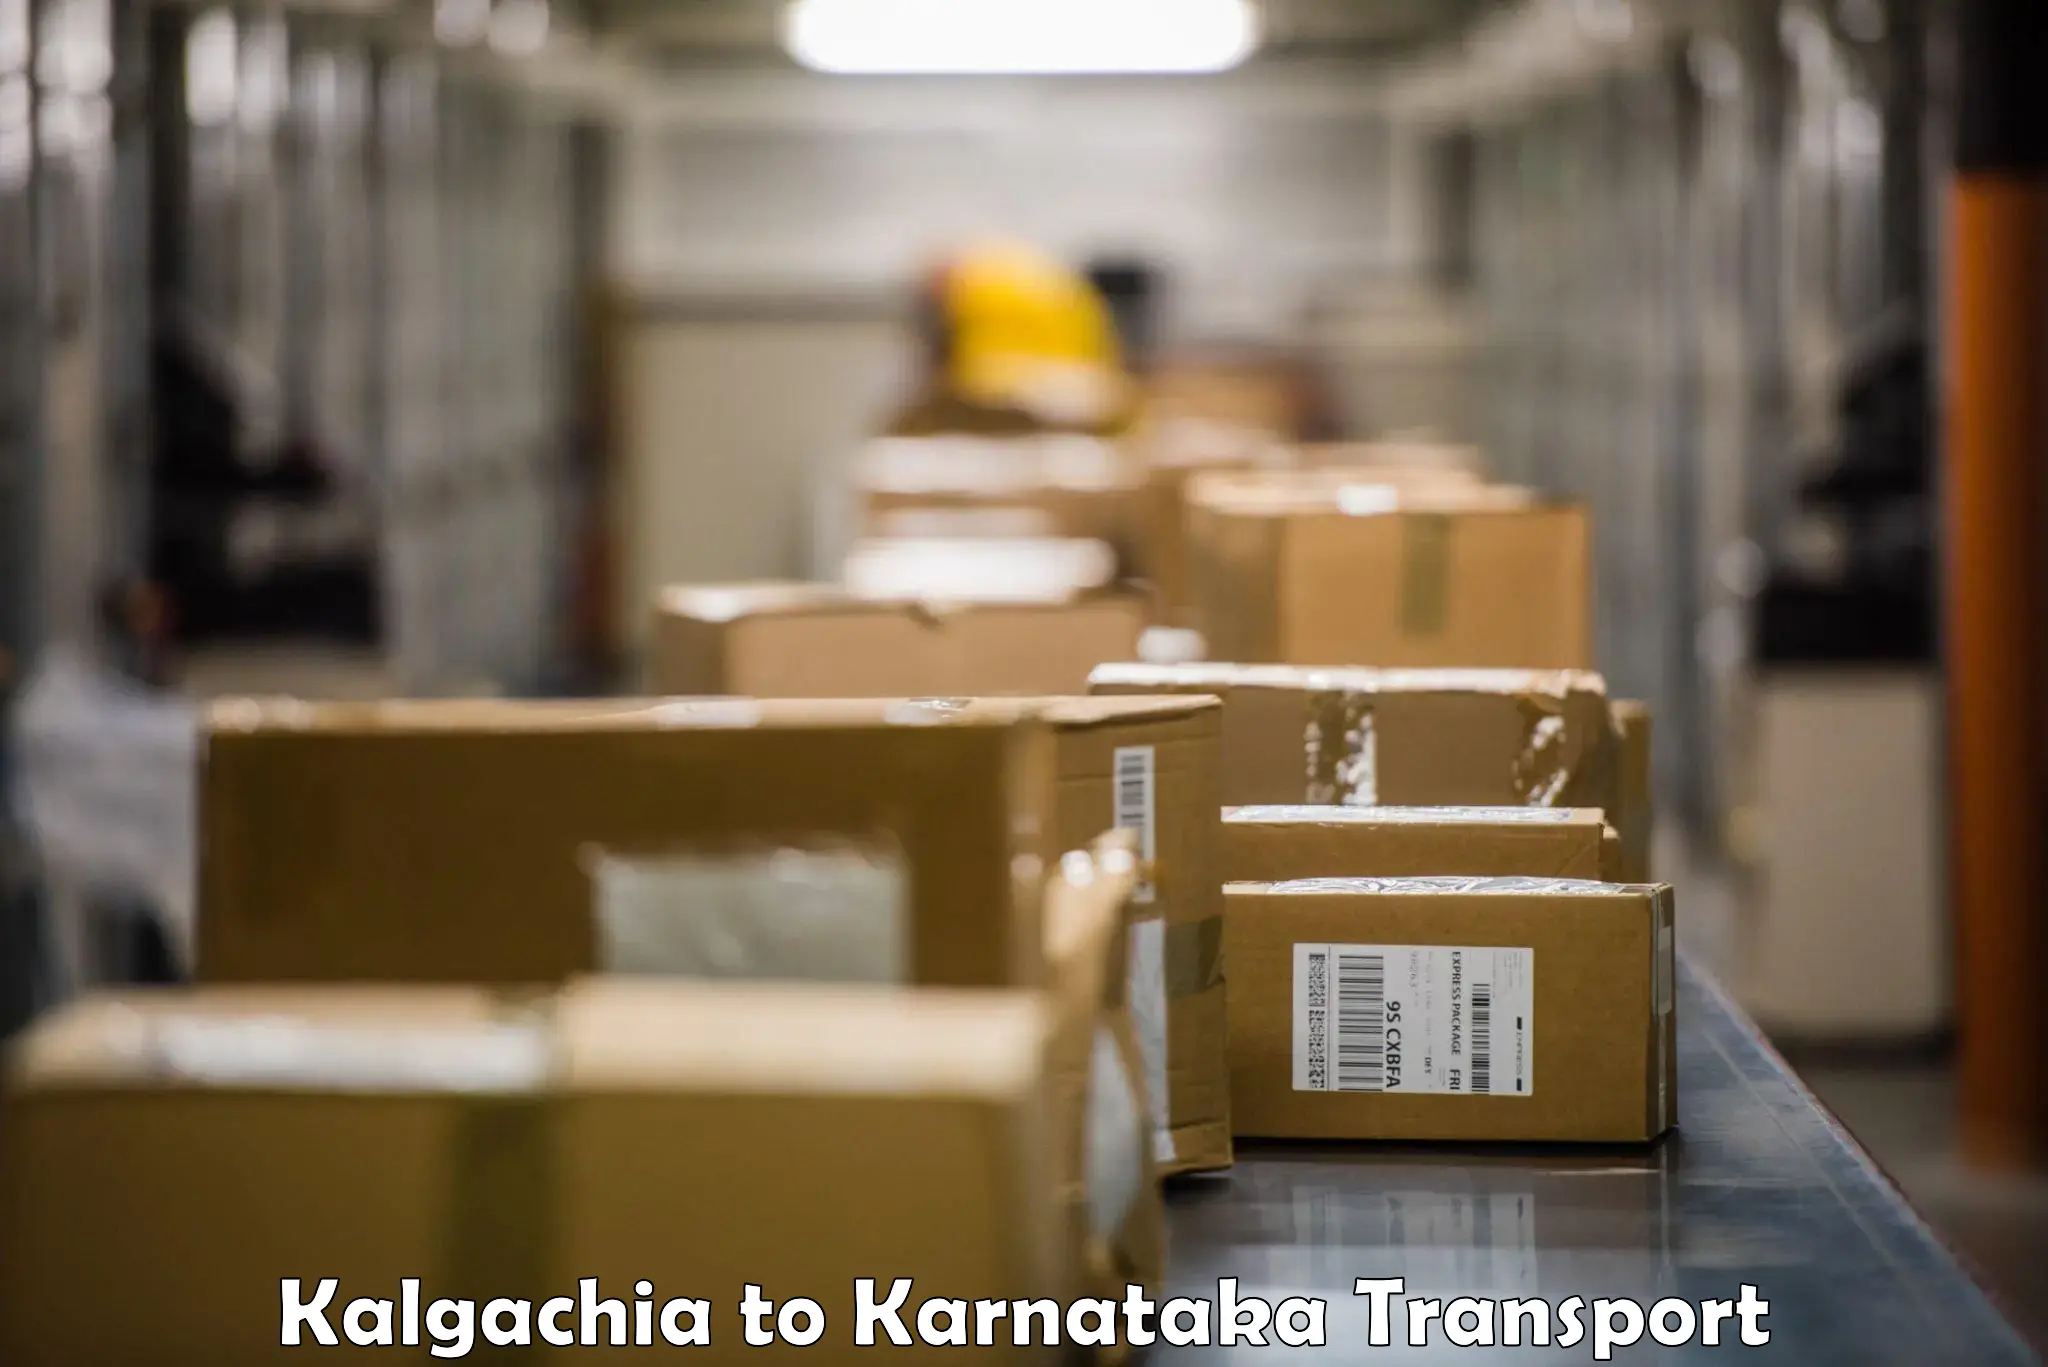 Nearby transport service Kalgachia to Sringeri